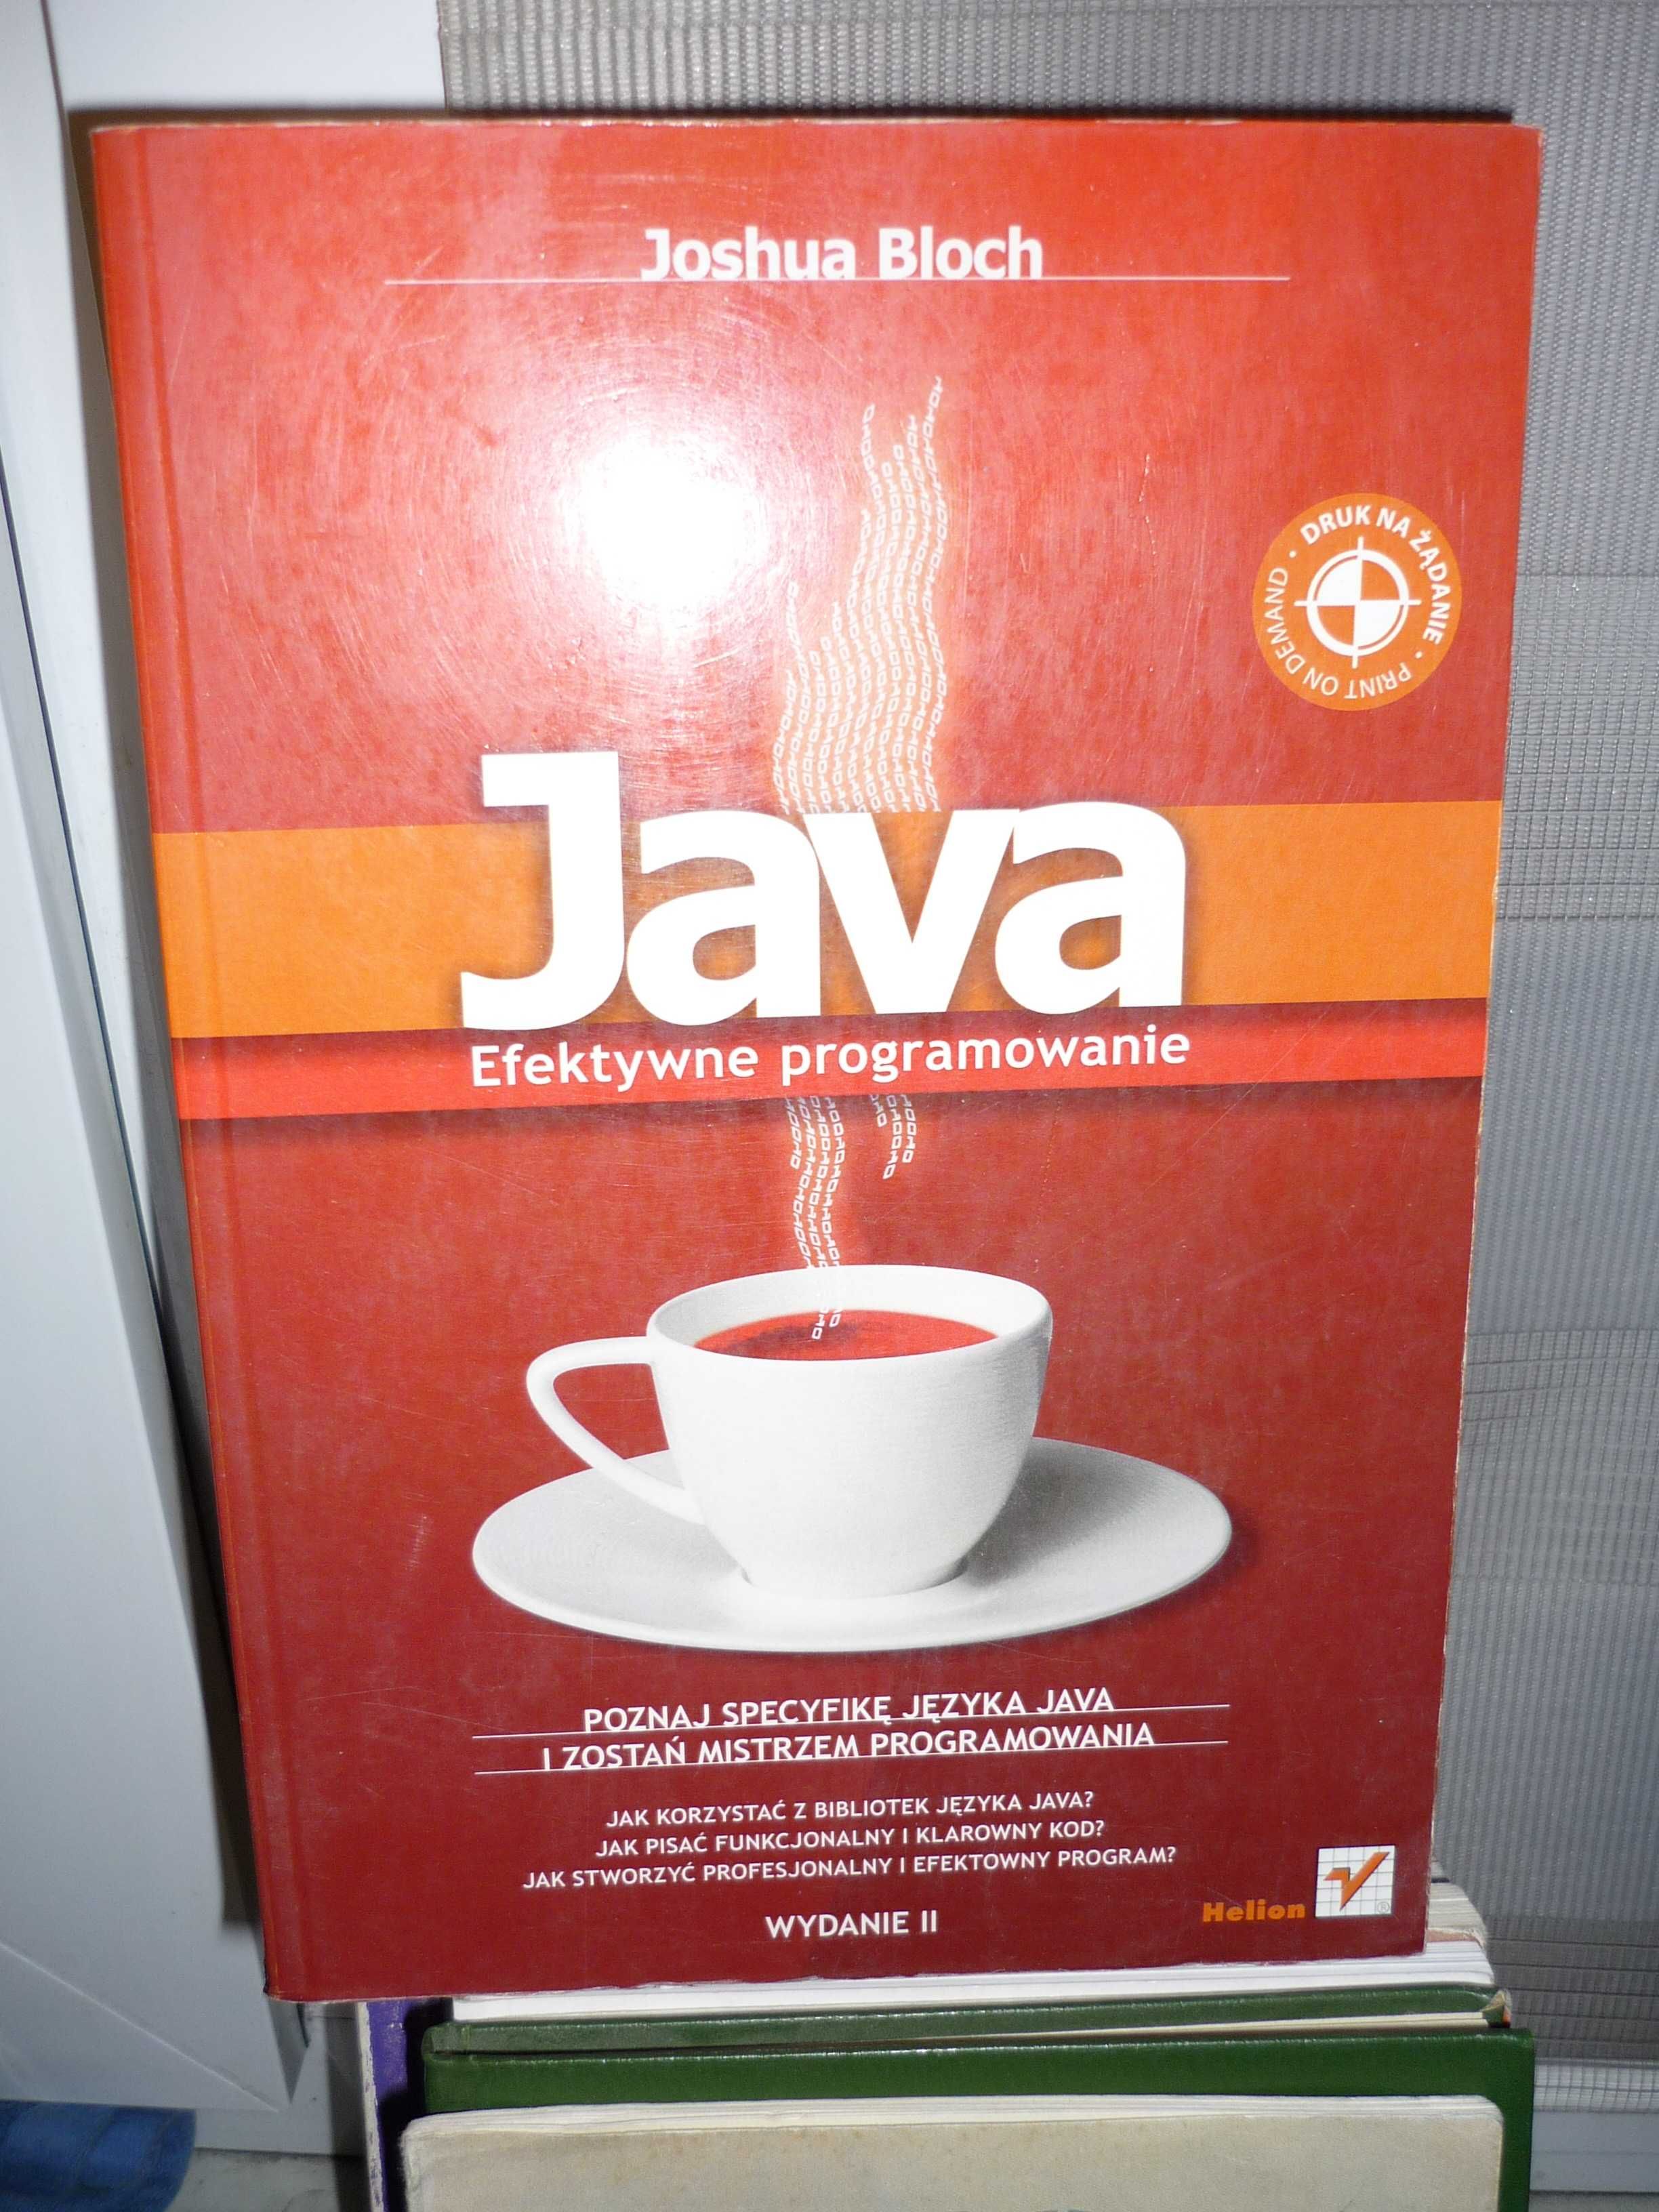 Java , Efektywne programowanie , Joshua Bloch.